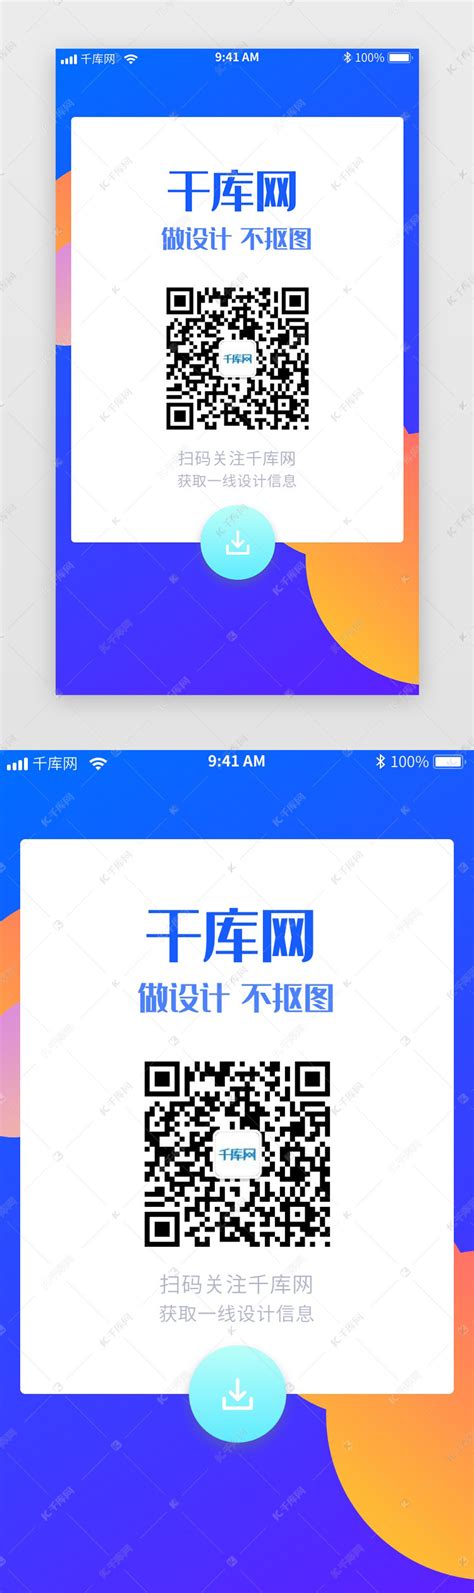 蓝色系二维码推广ui界面设计素材-千库网